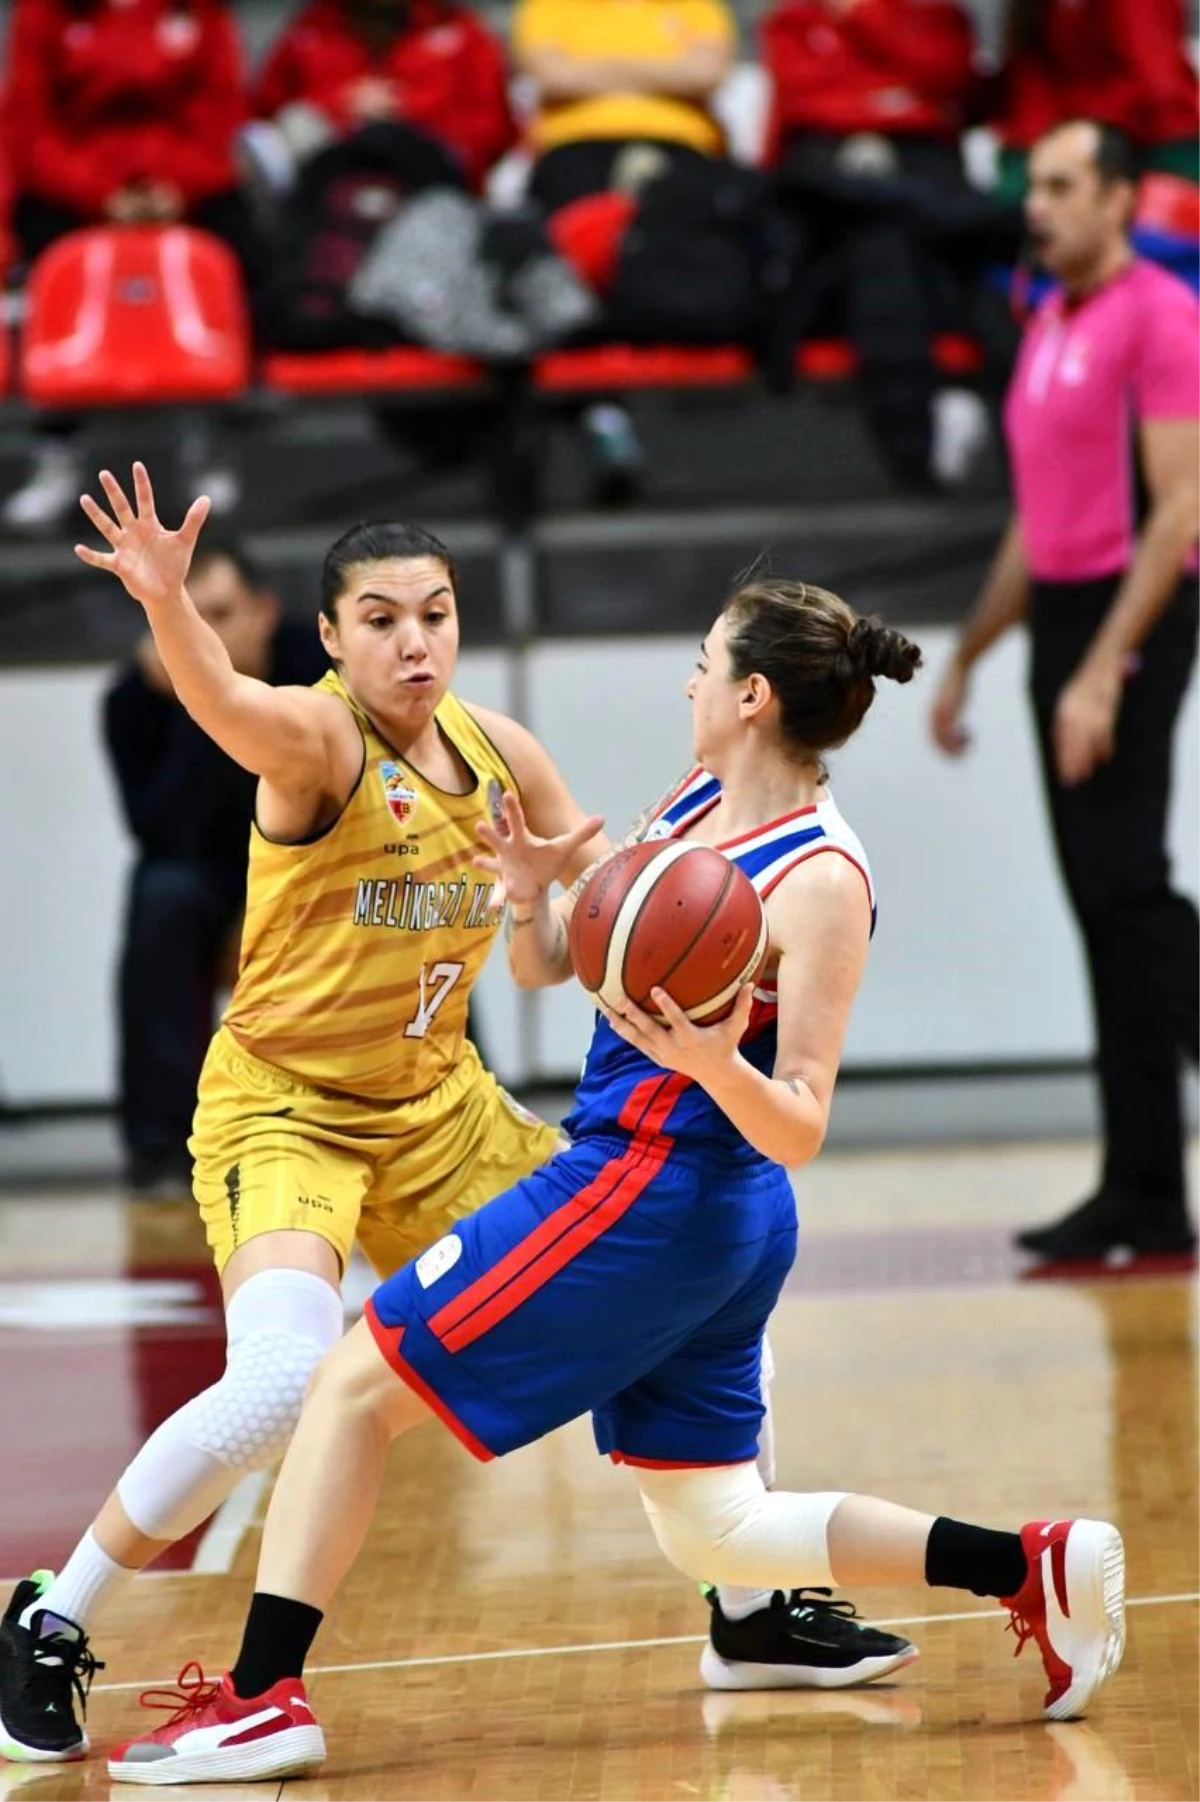 Melikgazi Kayseri Basketbol, Emlak Konut\'u 89-80 yenerek 4 maç sonra kazandı